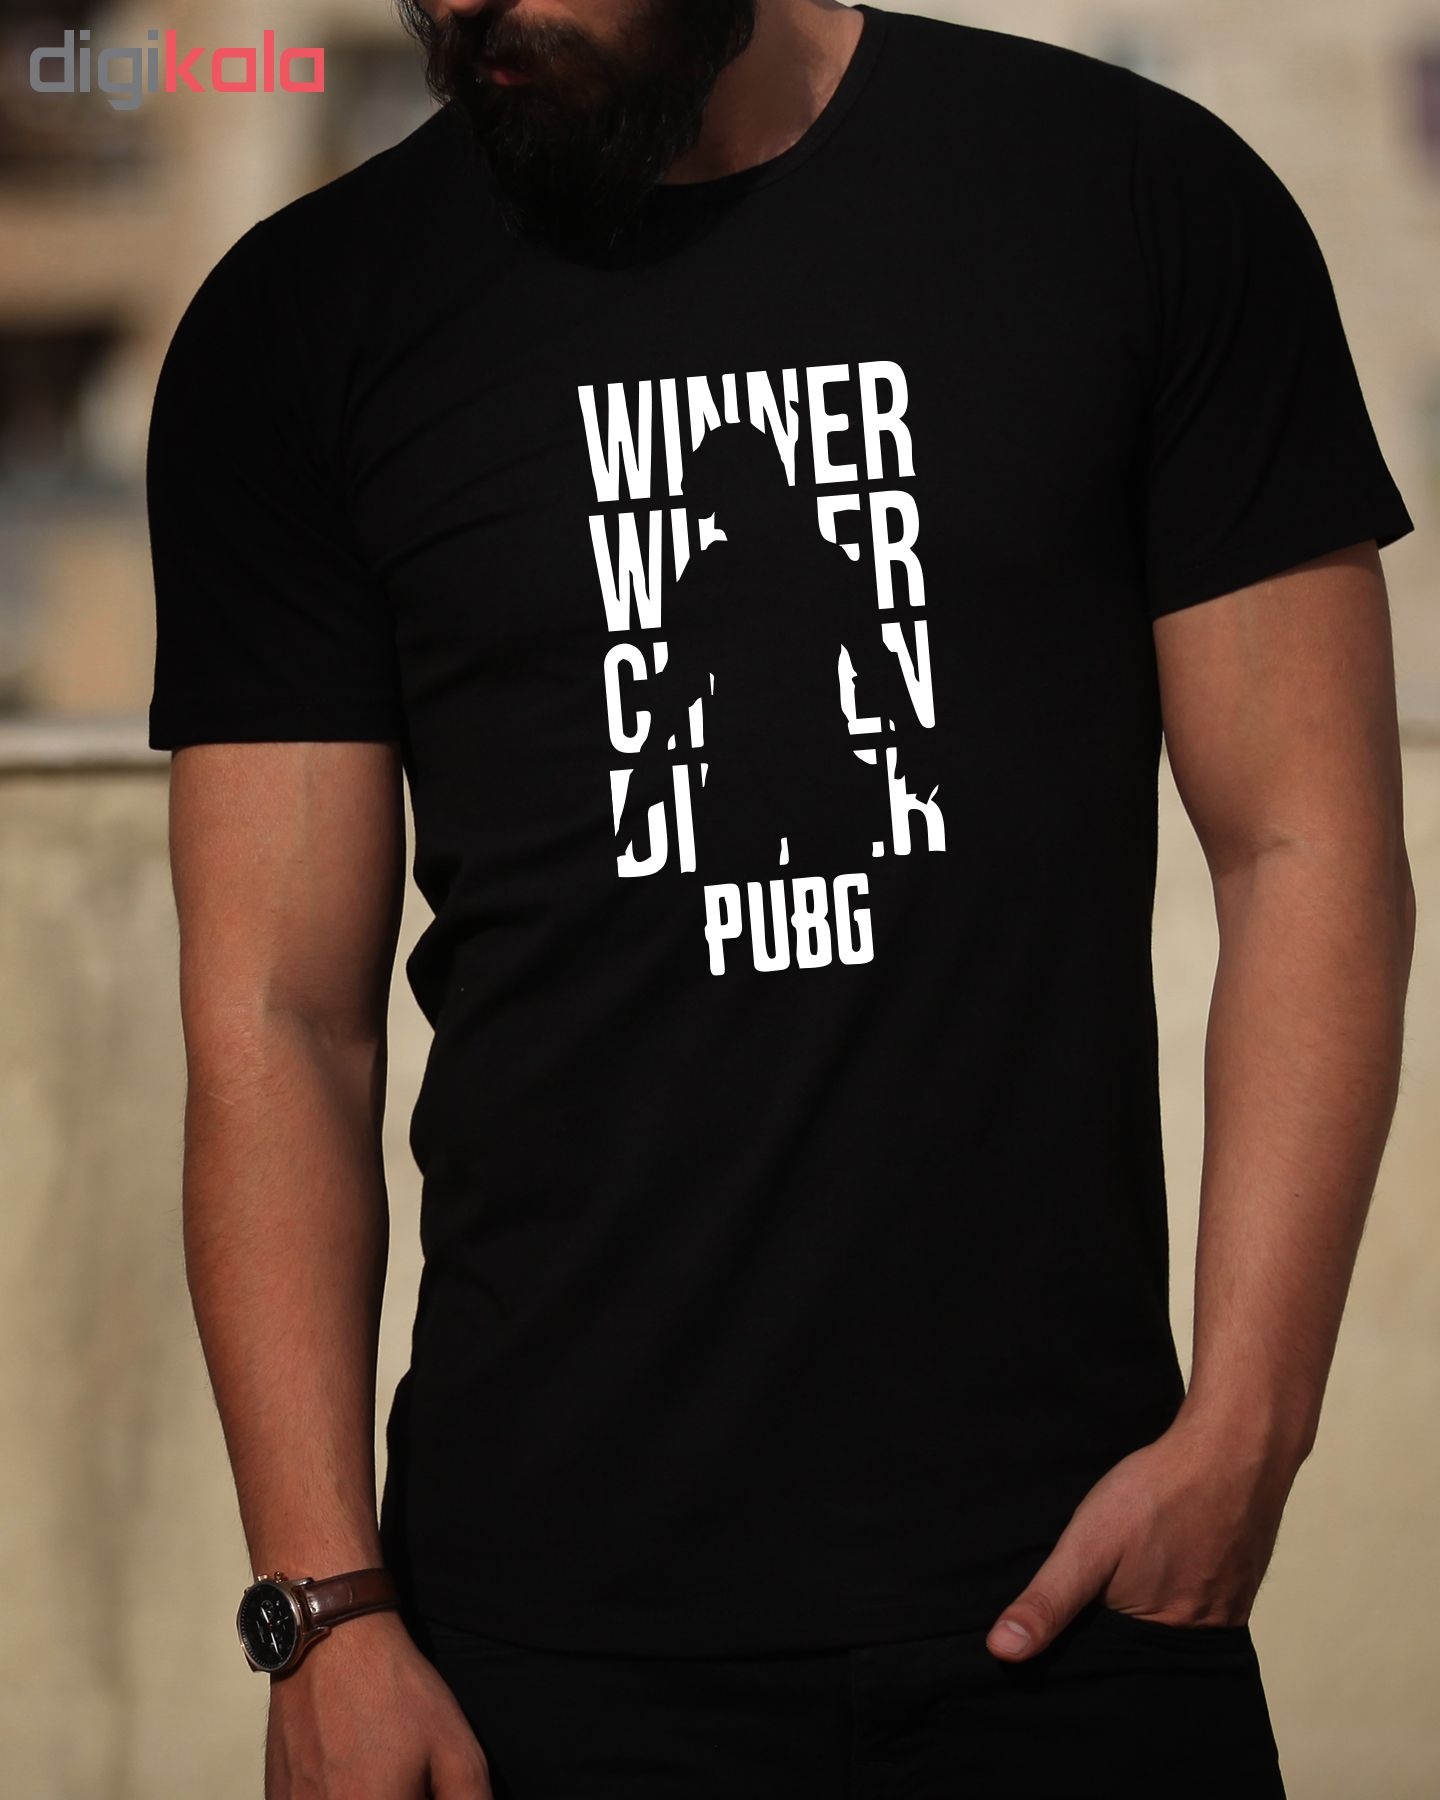 تی شرت مردانه طرح PUBG کد 34279